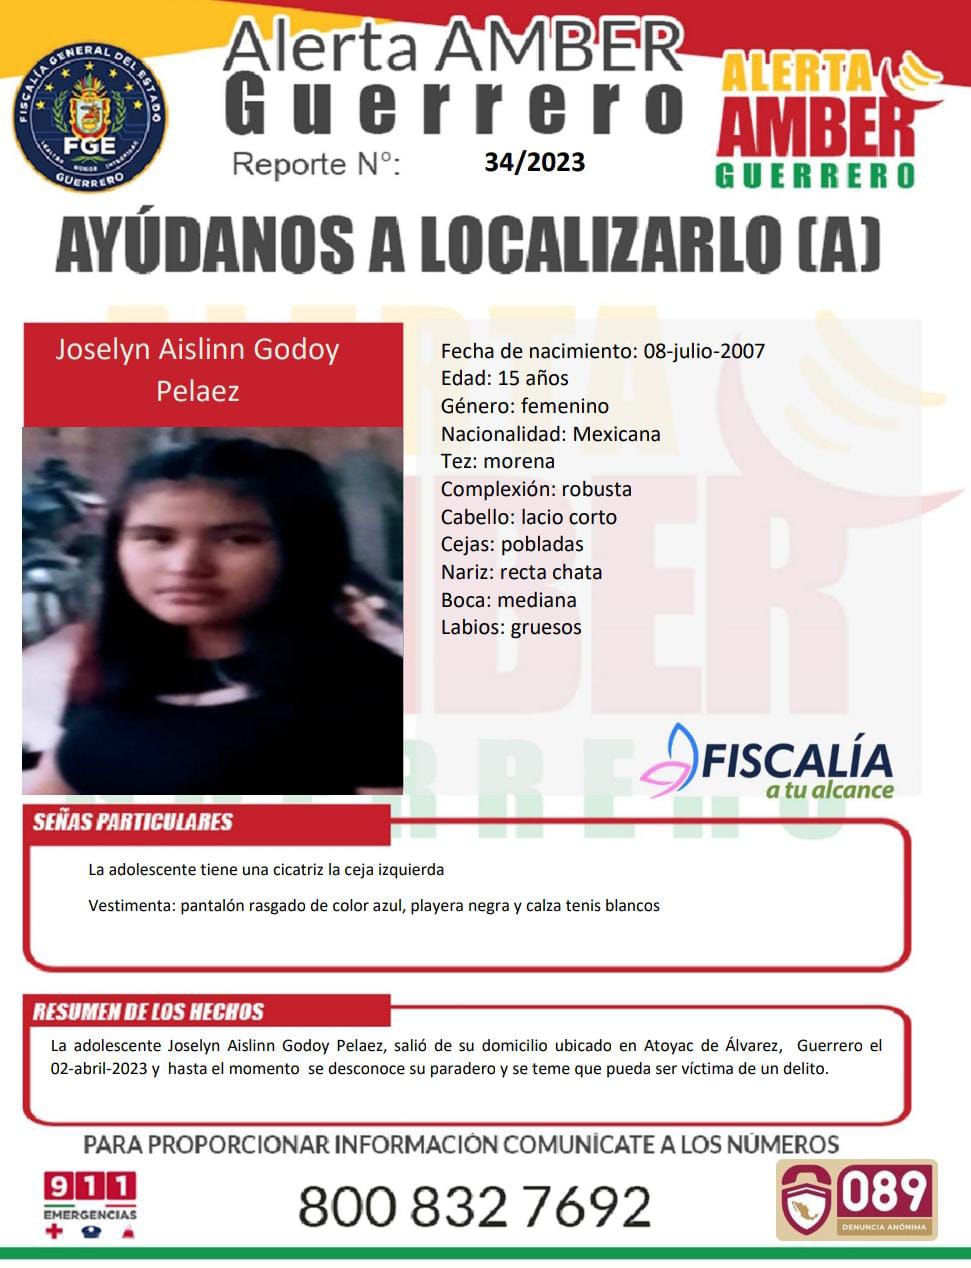 Fiscalía General Del Estado Solicita Su Colaboración Para Localizar A La Menor Joselyn Aislinn Godoy Peláez.